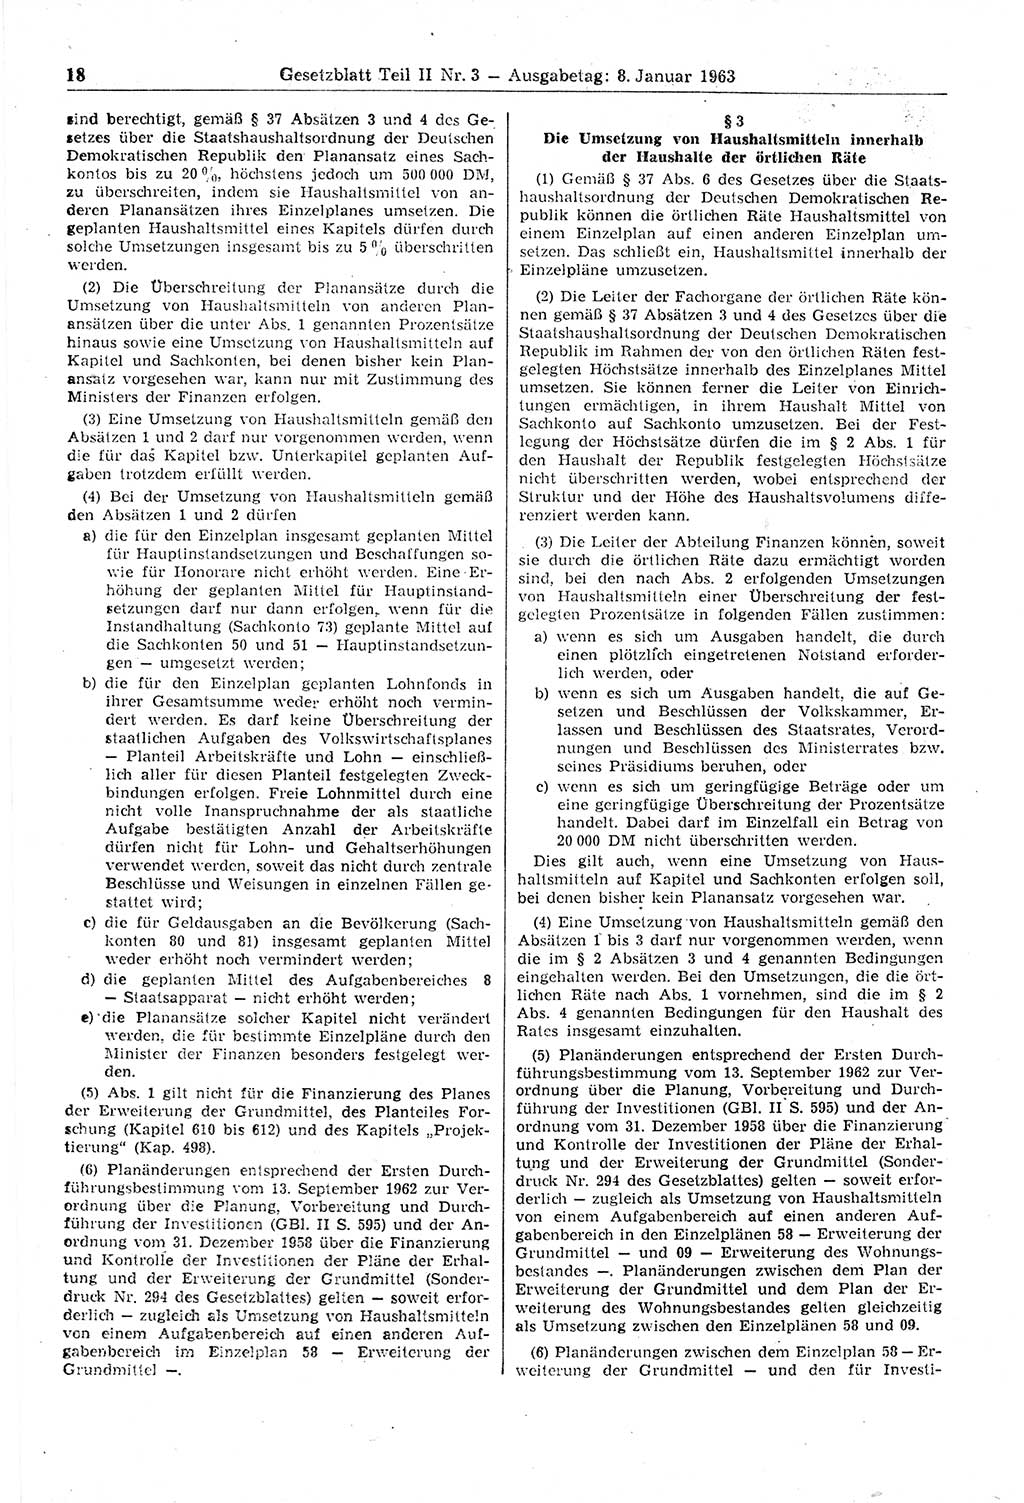 Gesetzblatt (GBl.) der Deutschen Demokratischen Republik (DDR) Teil ⅠⅠ 1963, Seite 18 (GBl. DDR ⅠⅠ 1963, S. 18)